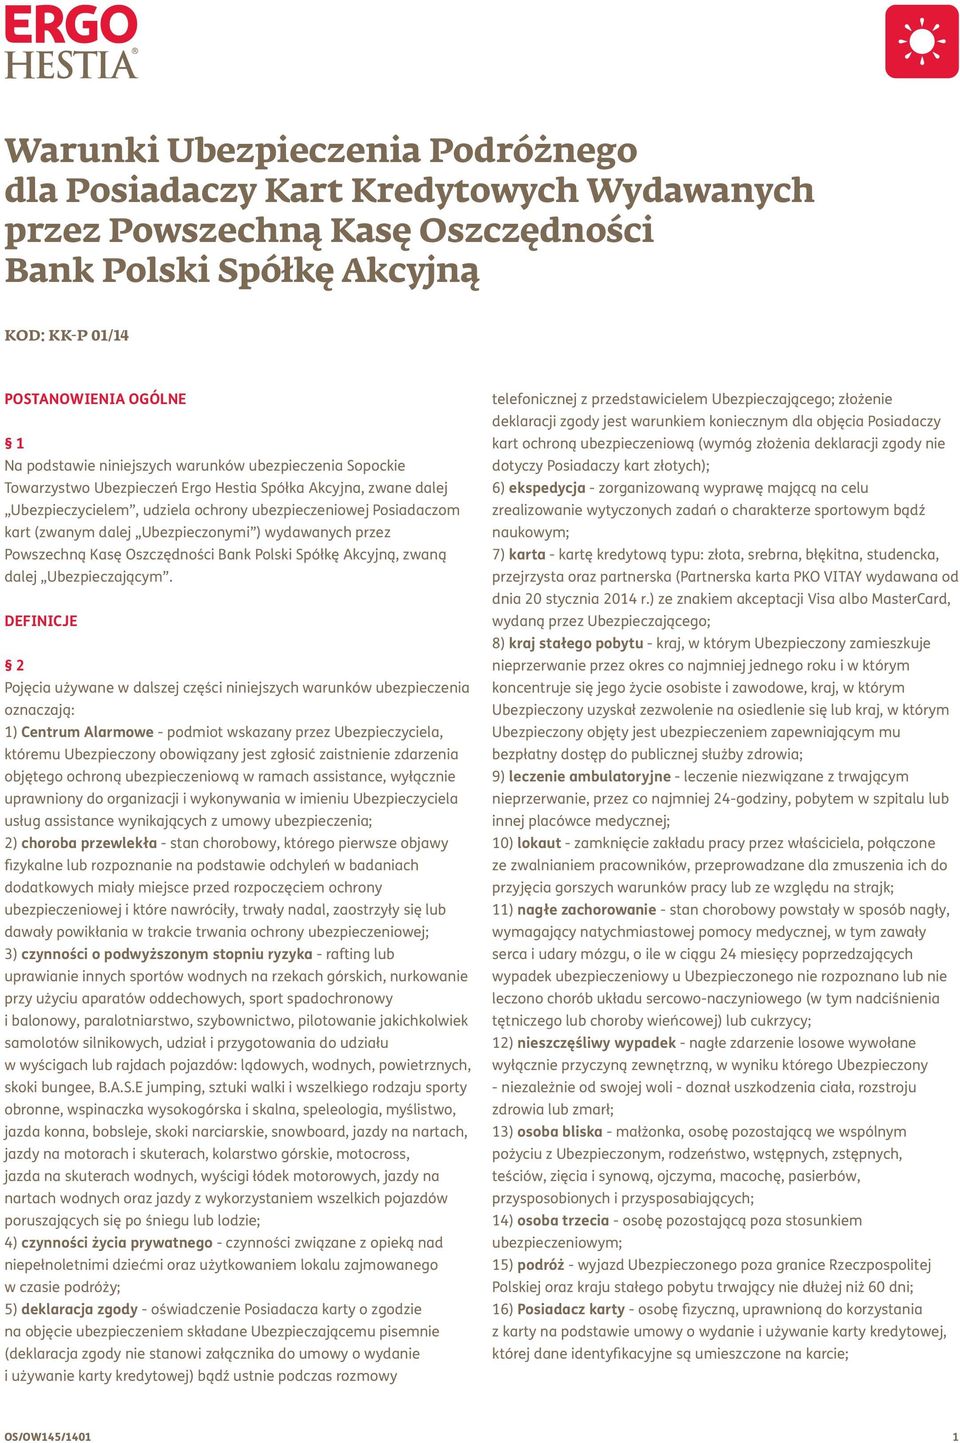 Ubezpieczonymi ) wydawanych przez Powszechną Kasę Oszczędności Bank Polski Spółkę Akcyjną, zwaną dalej Ubezpieczającym.